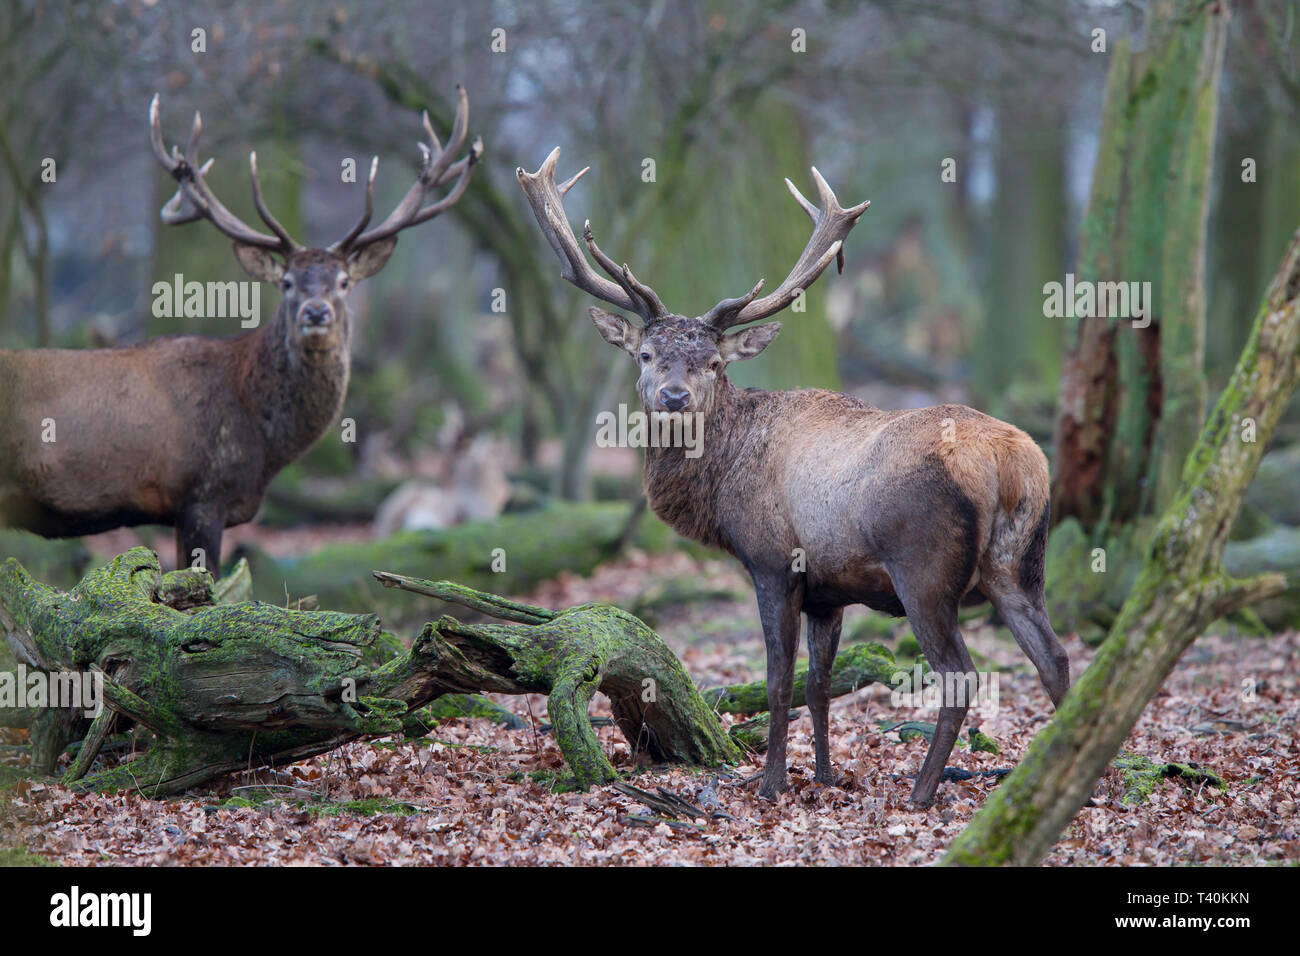 Rothirsch - Maennchen, Cervus elaphus, red deer - male Stock Photo